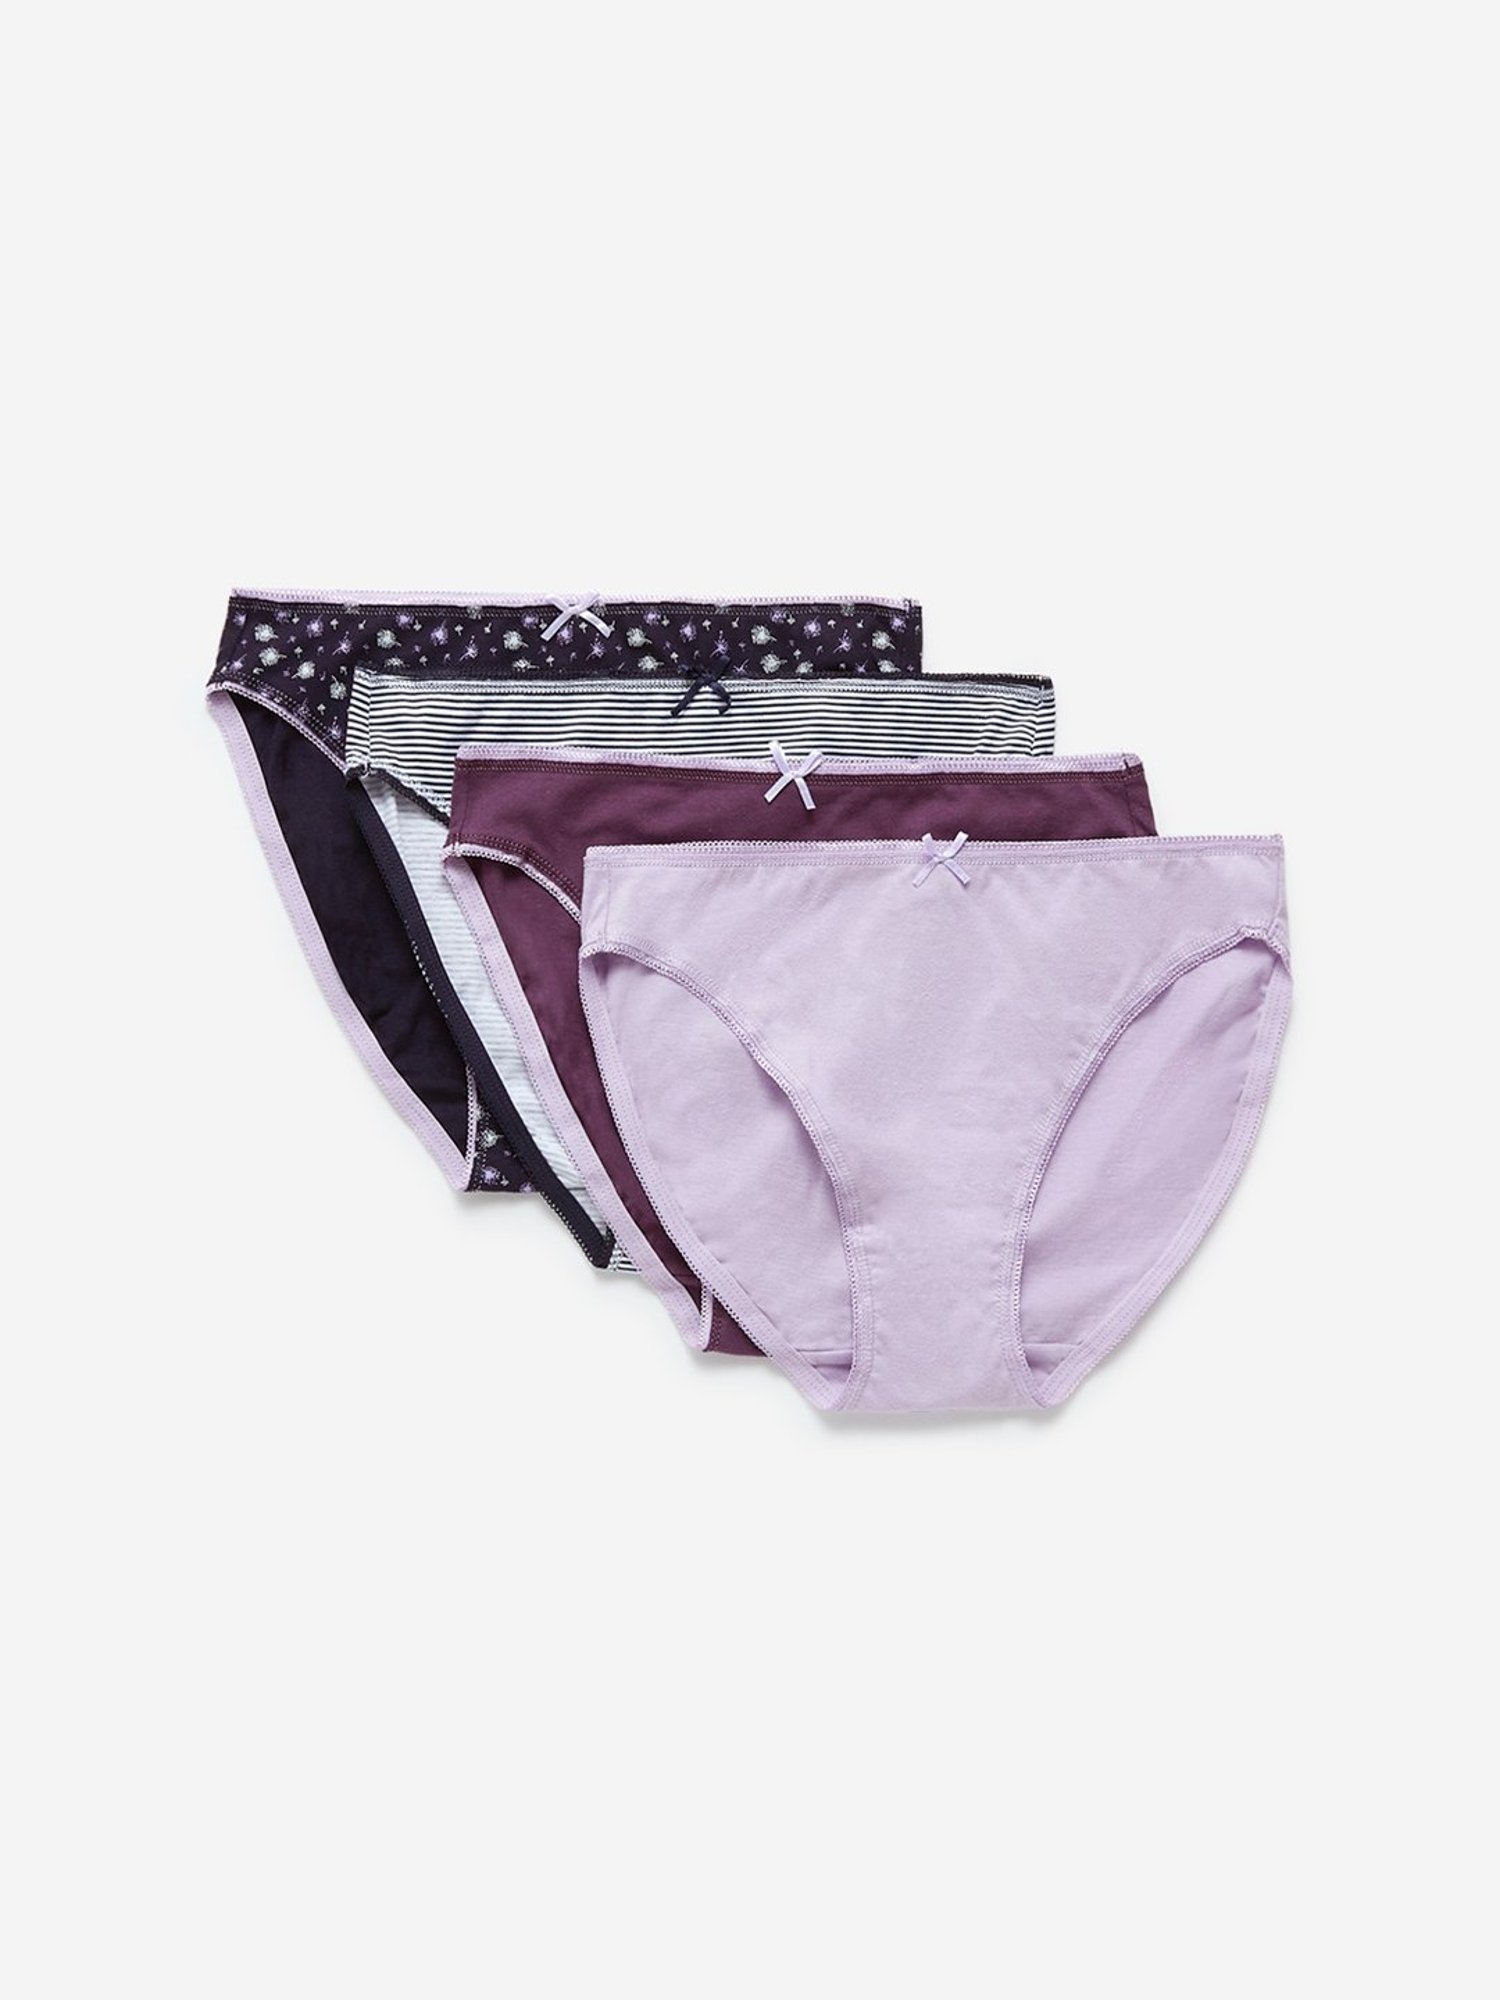 Buy Wunderlove Multicolour Printed Bikini Briefs - Pack of 3 from Westside